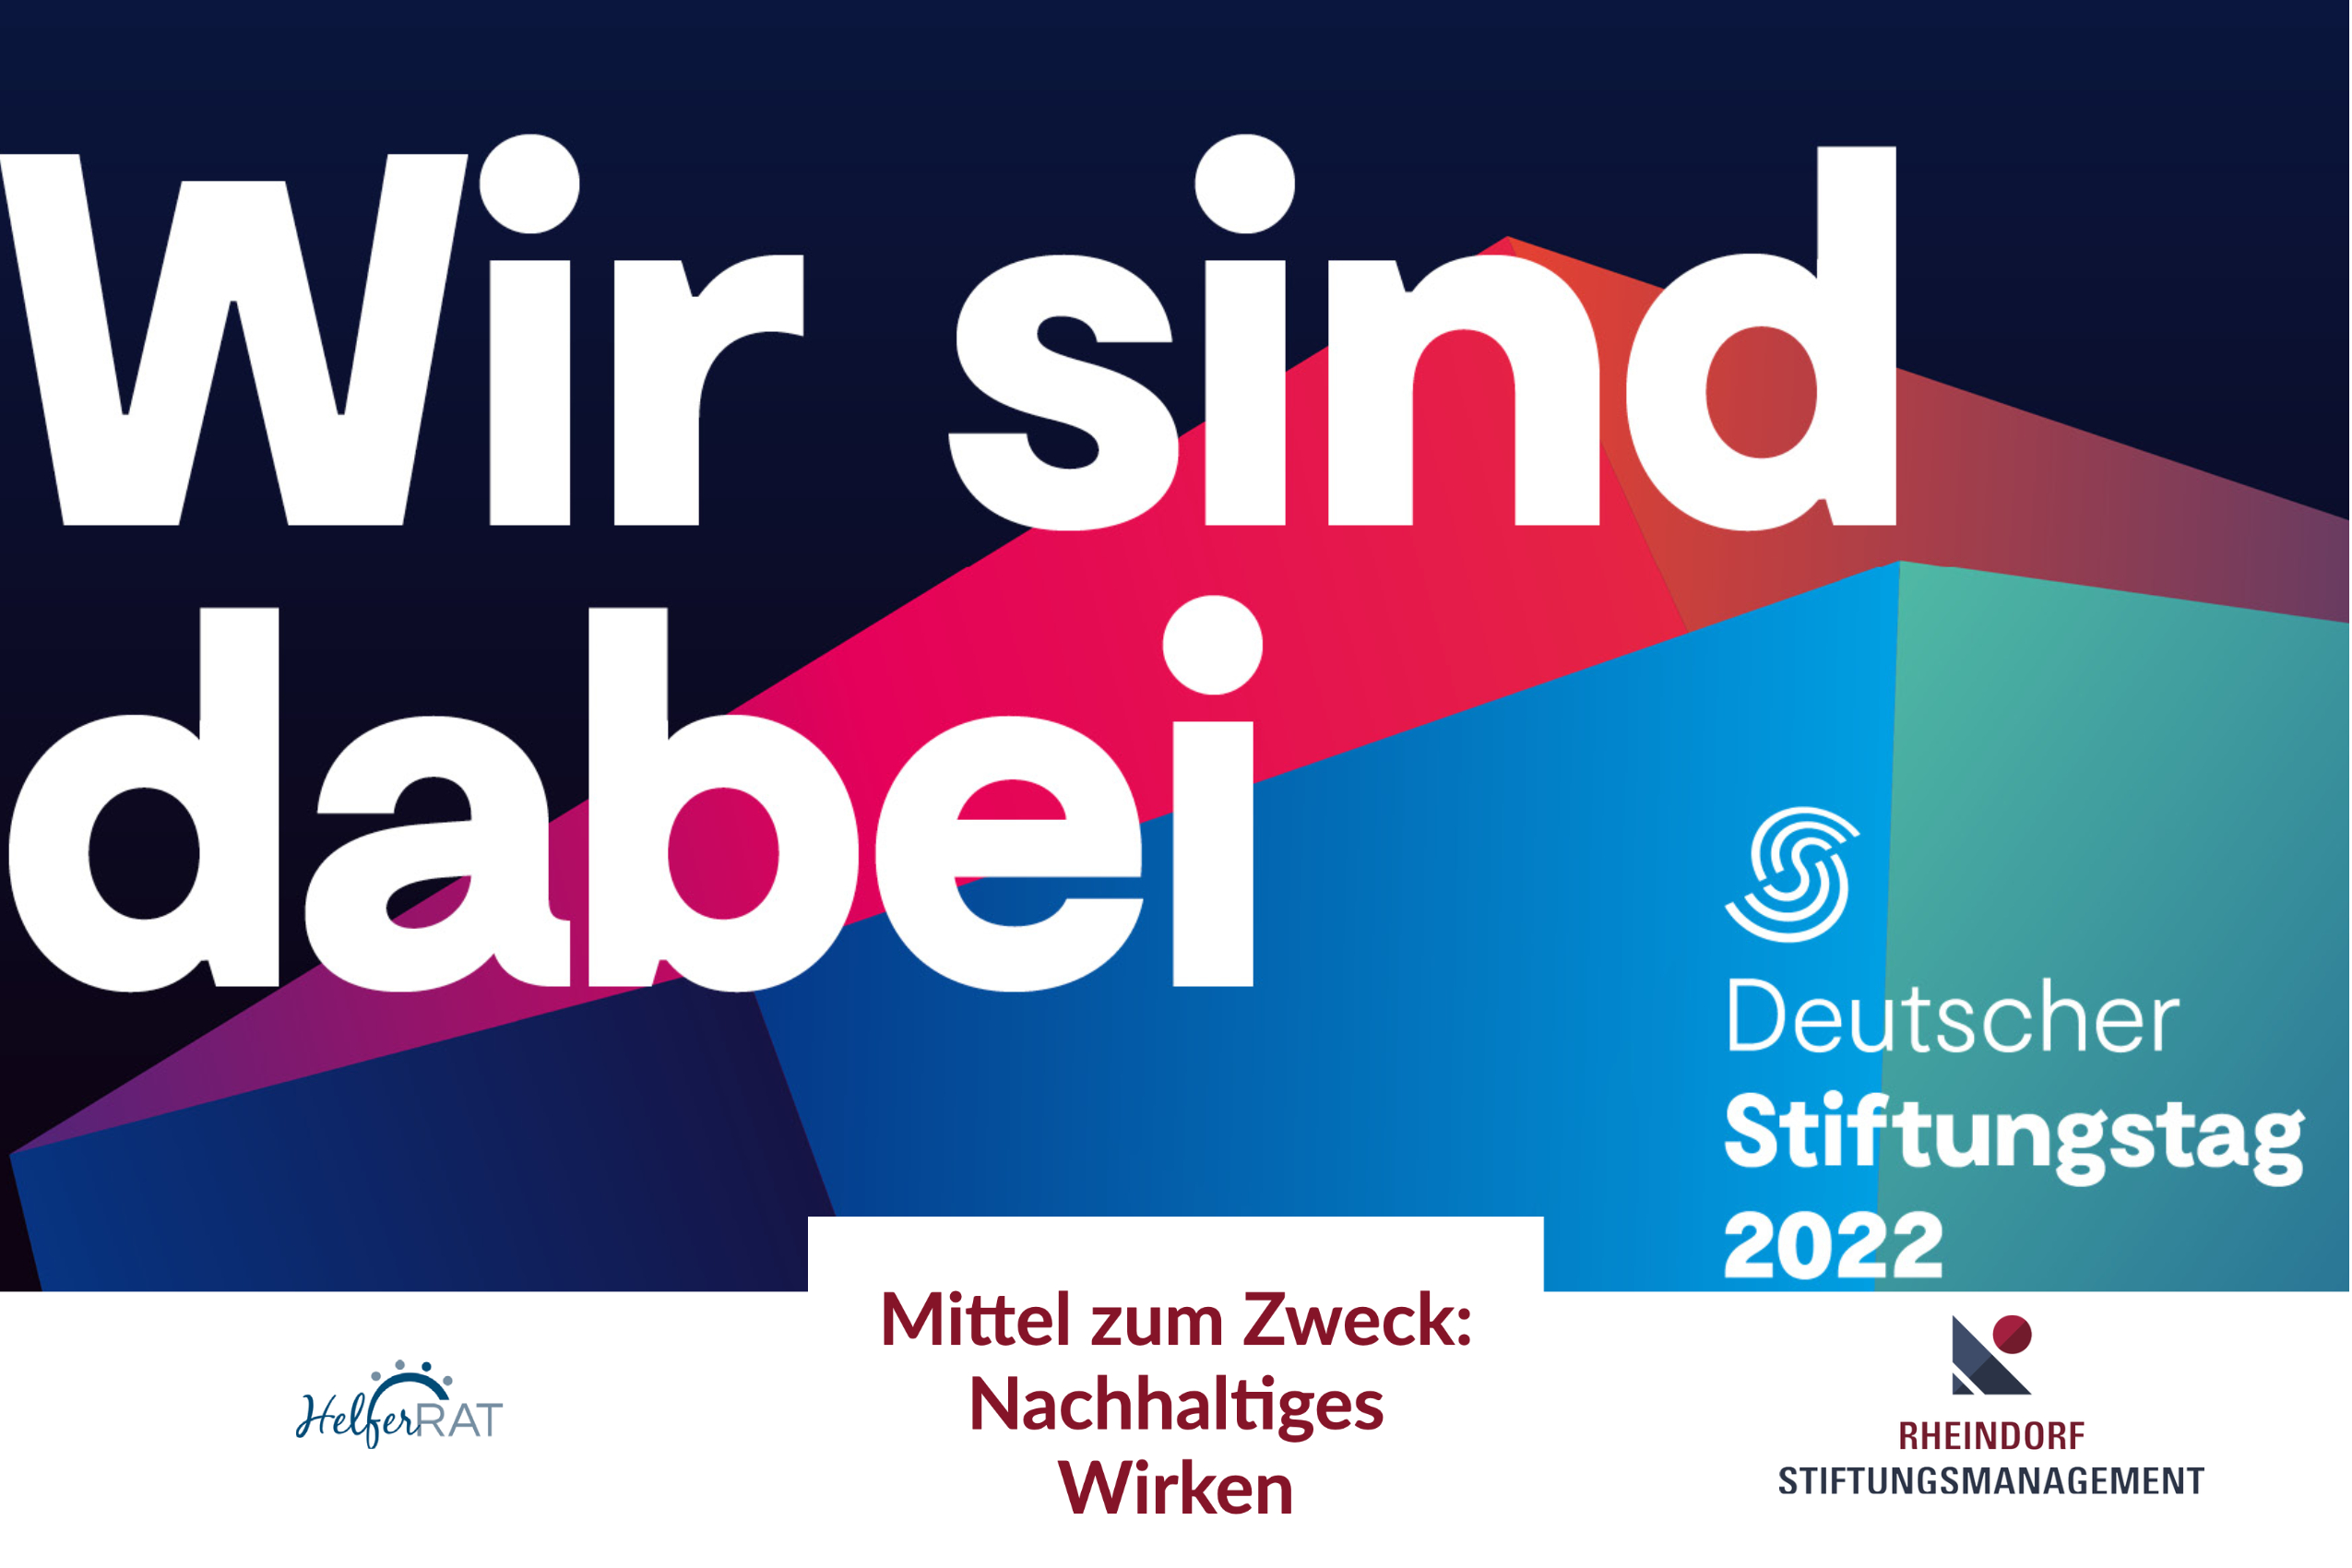 Gehen Sie mit Rheindorf Stiftungsmanagement zum Deutschen Stiftungstag 2022